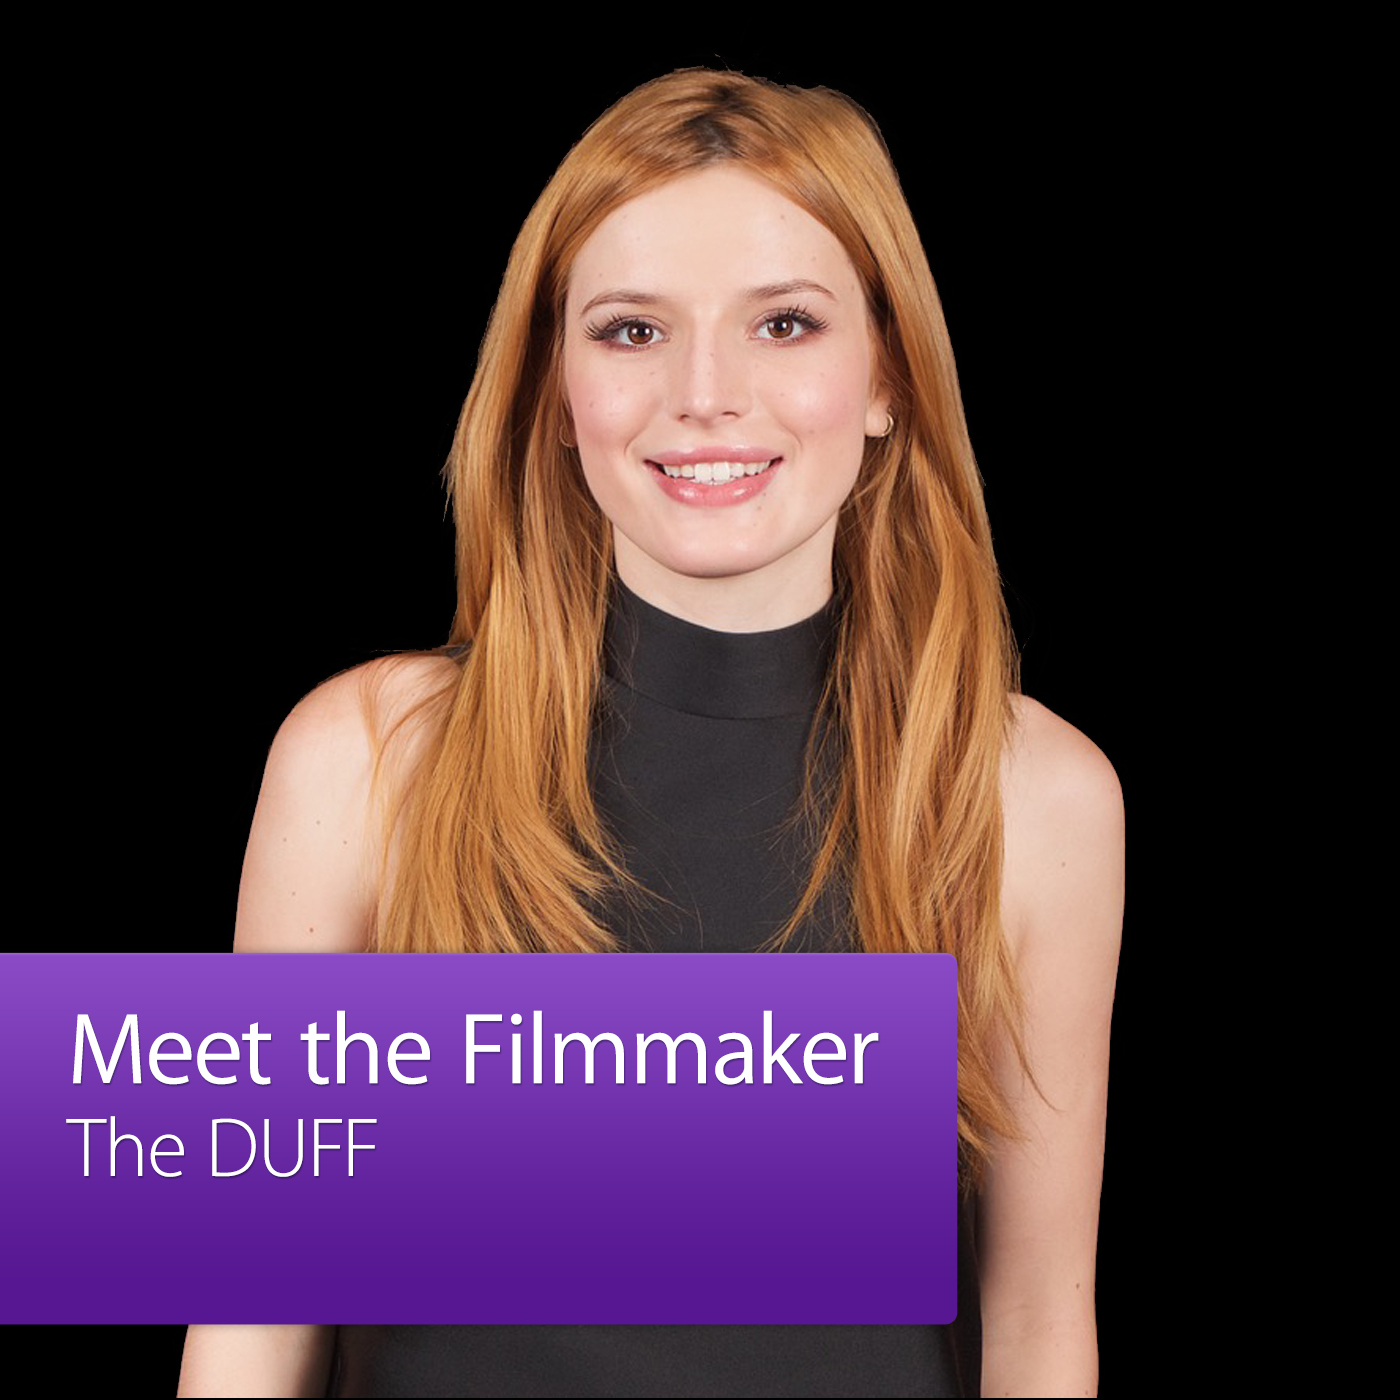 The DUFF: Meet the Filmmaker